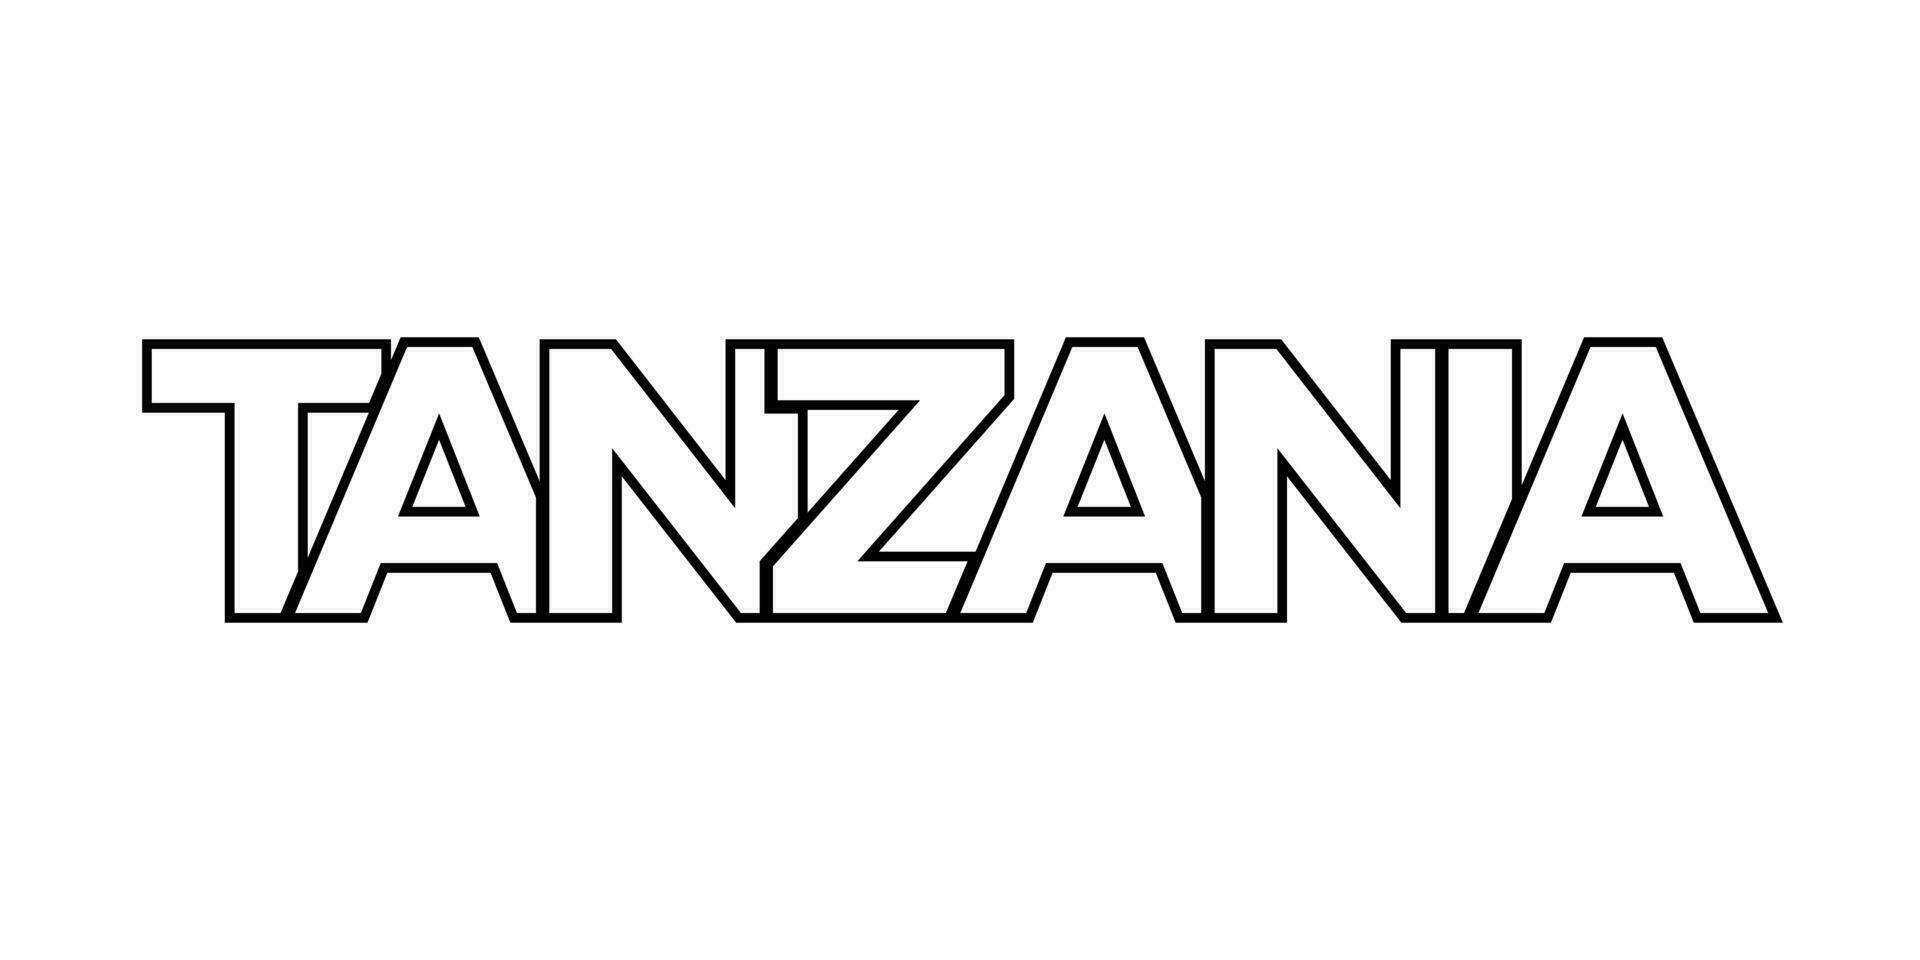 Tanzania embleem. de ontwerp Kenmerken een meetkundig stijl, vector illustratie met stoutmoedig typografie in een modern lettertype. de grafisch leuze belettering.